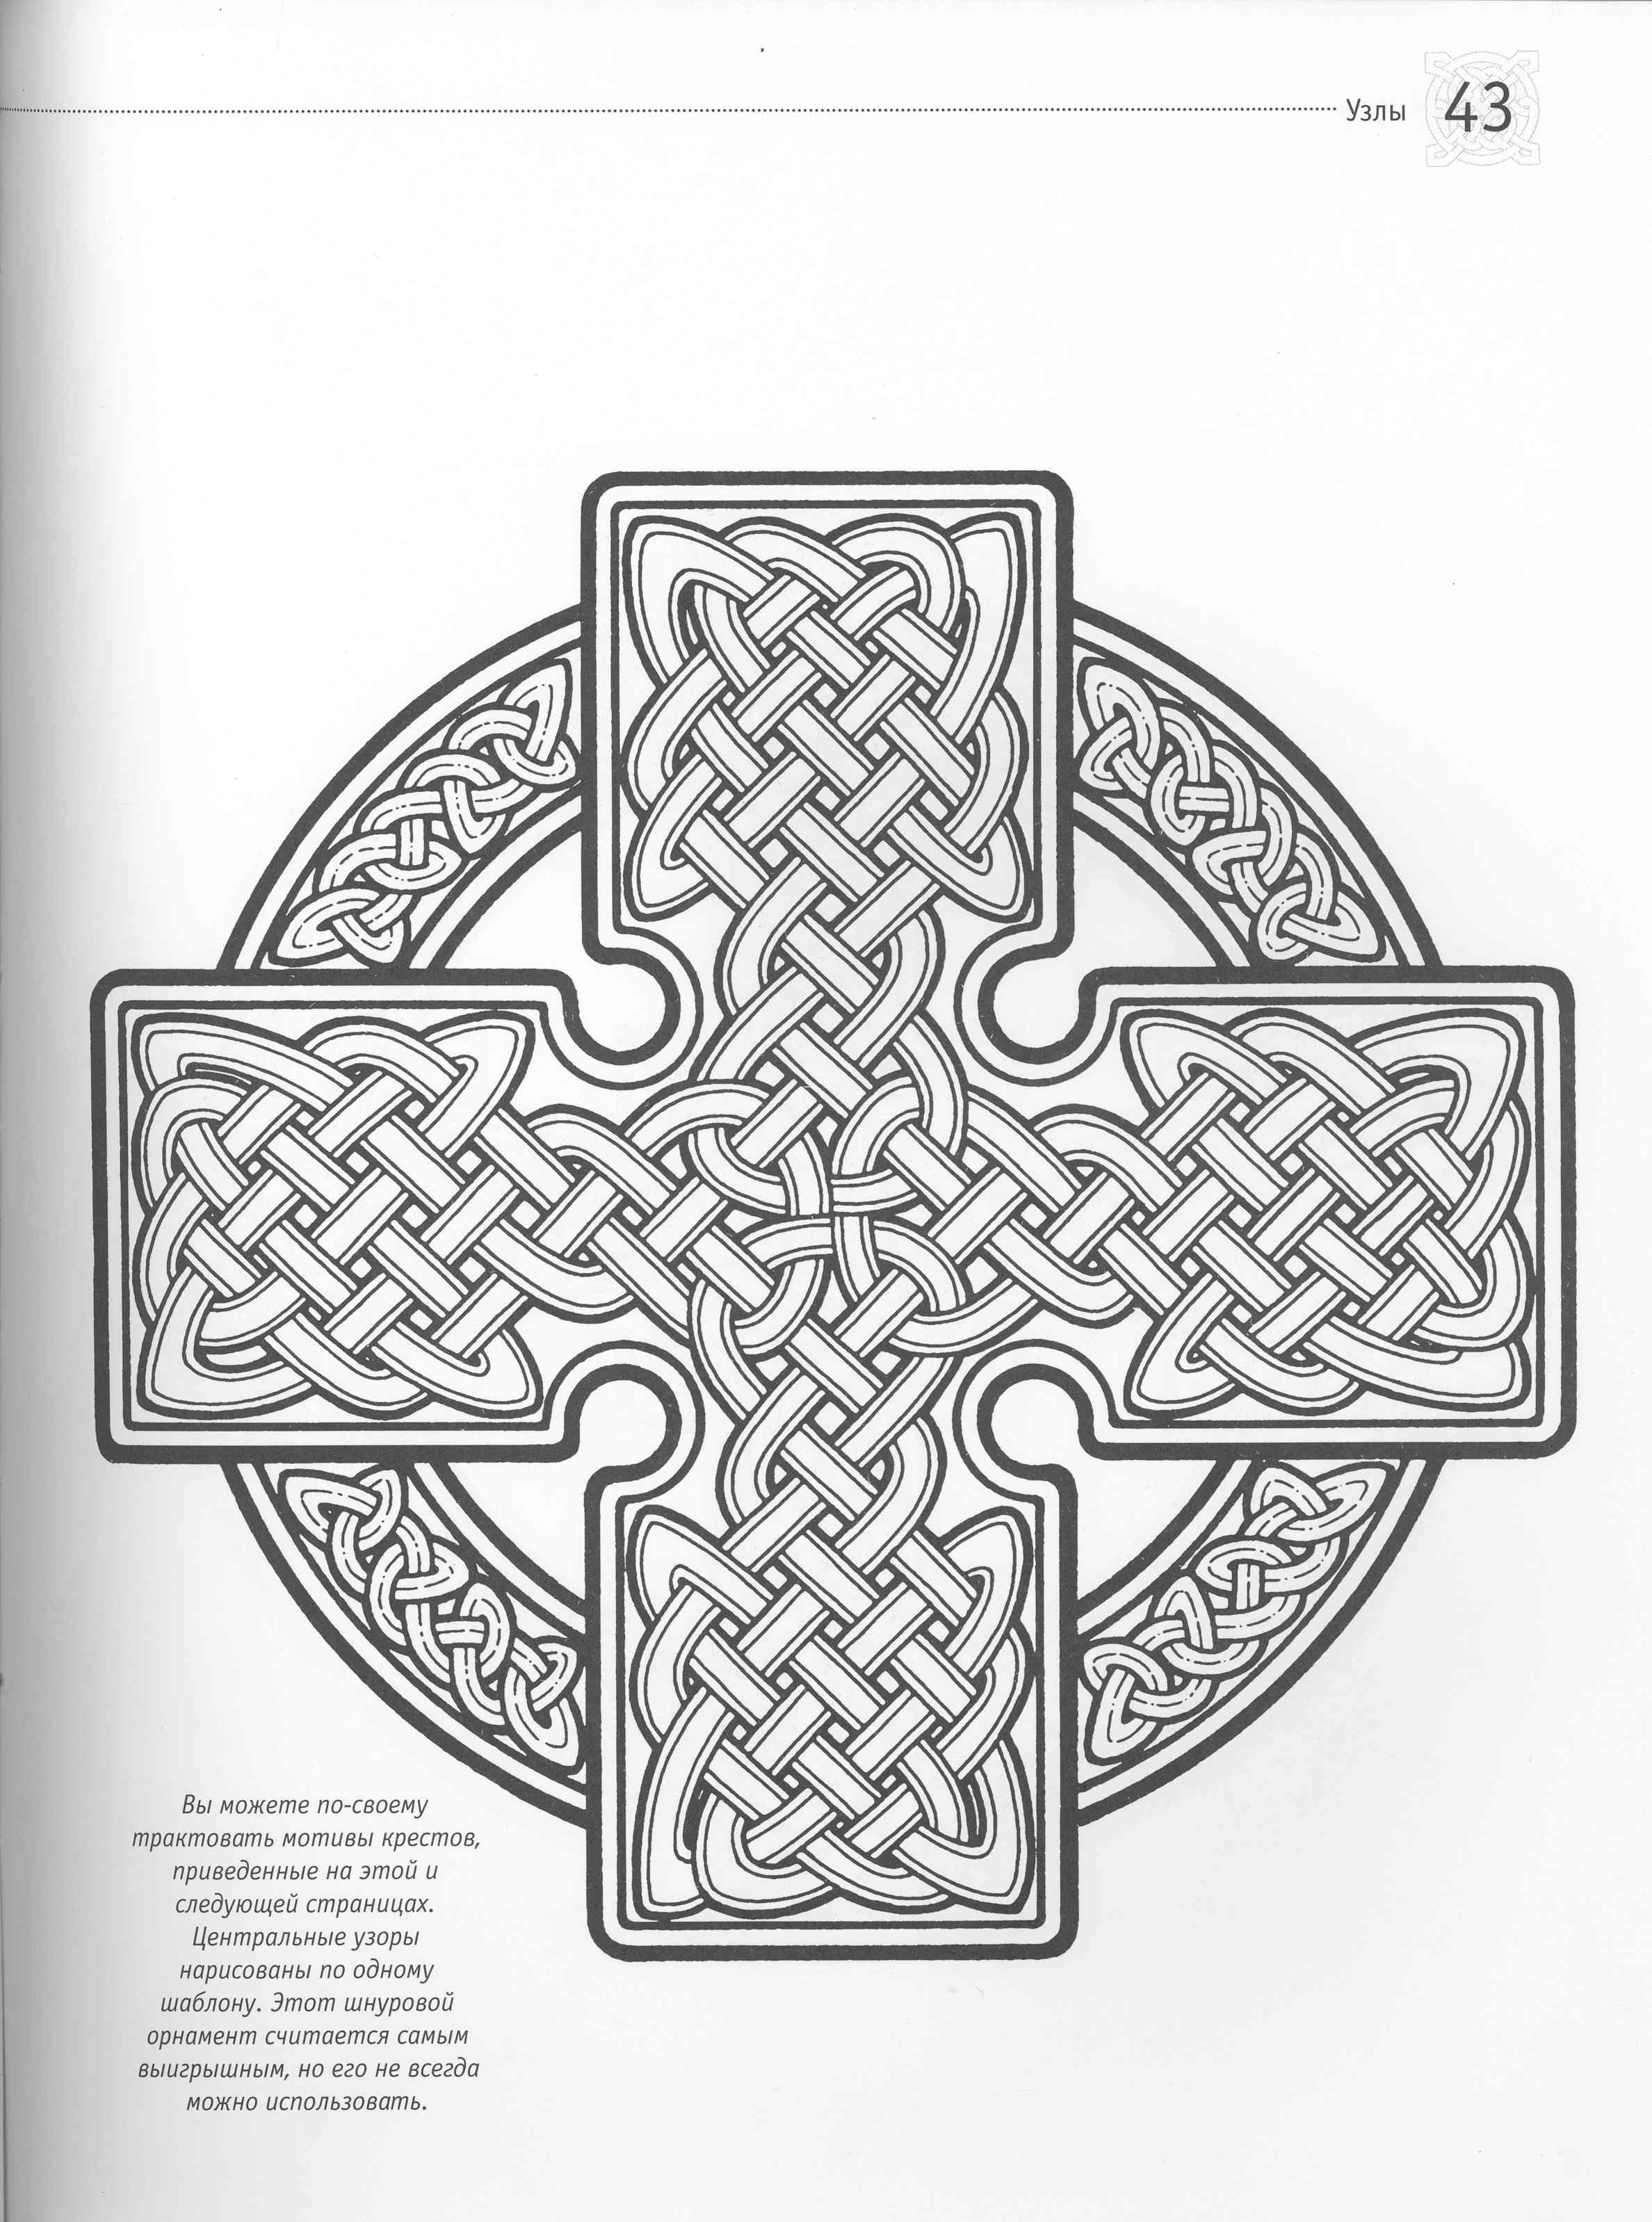 Коптский крест Кельтский орнамент